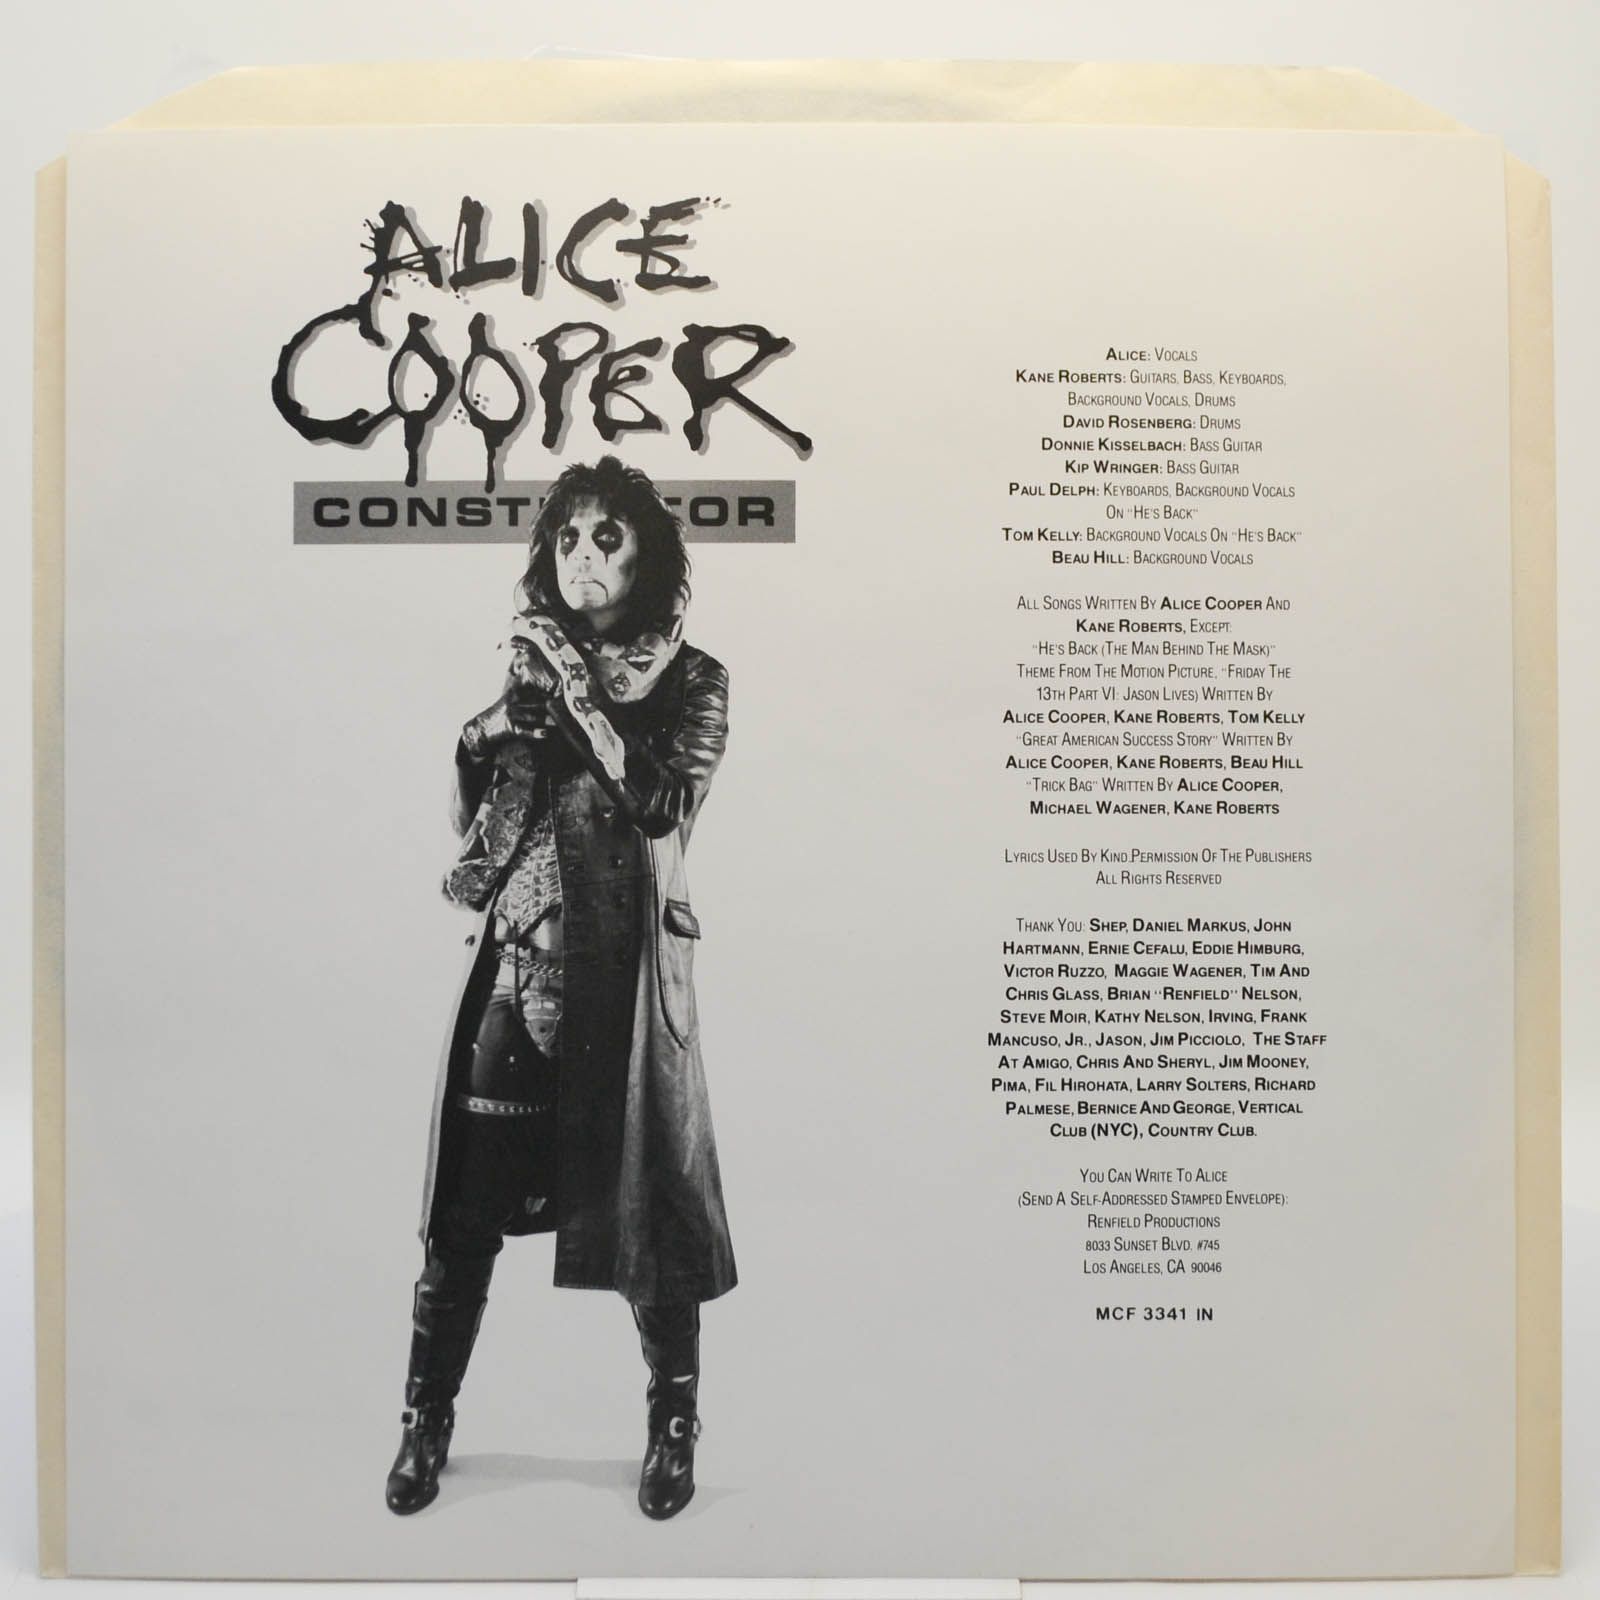 Alice Cooper — Constrictor (UK), 1986